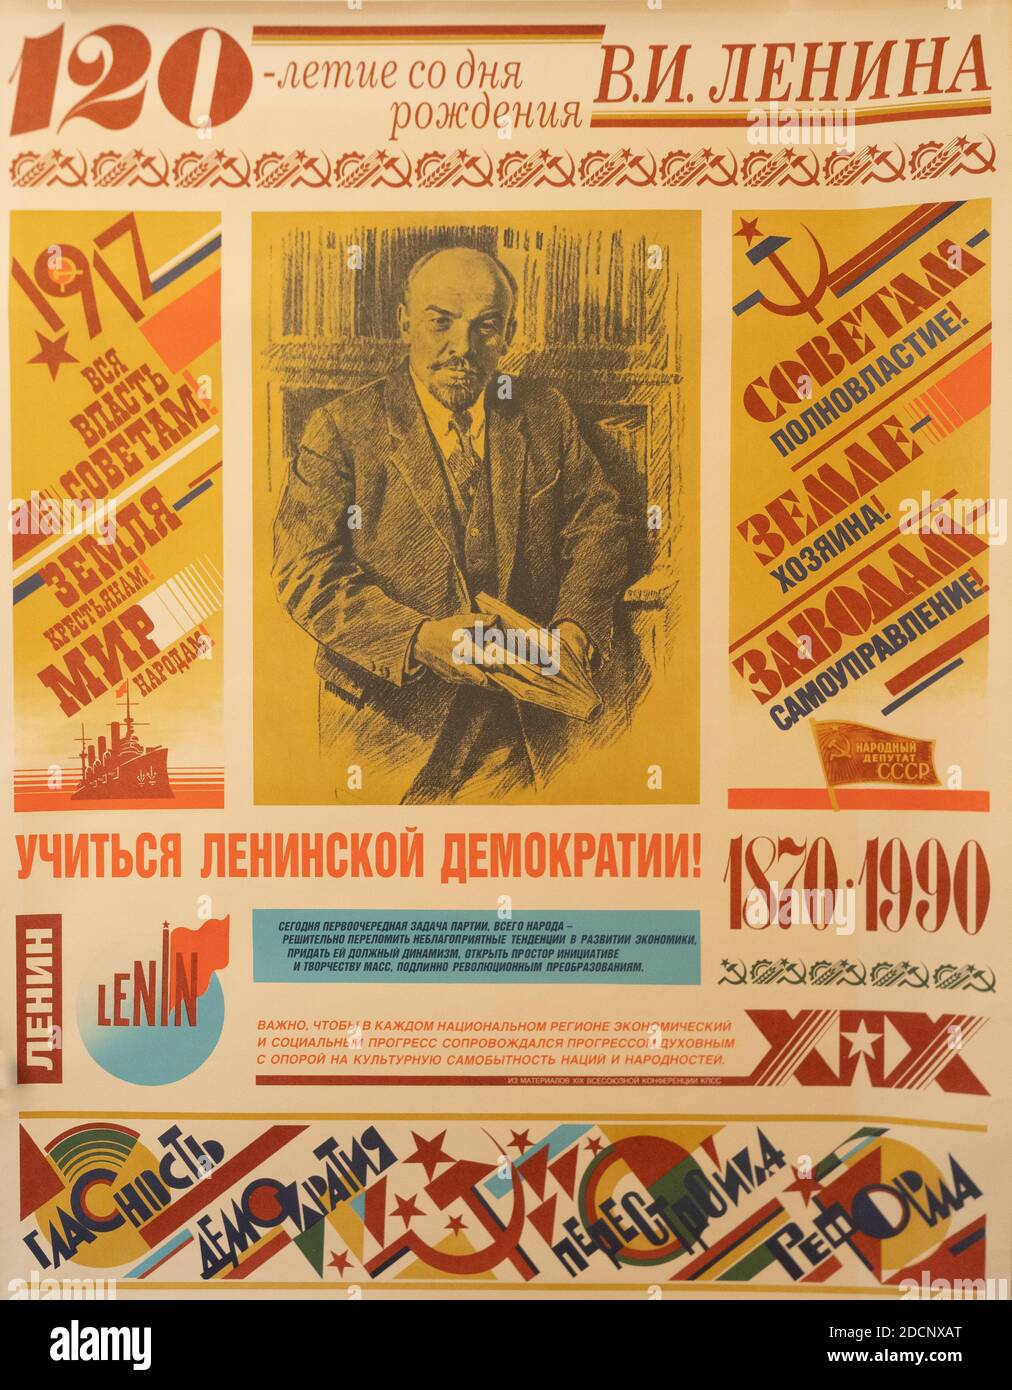 Une affiche de propagande de l'Union soviétique présentant Lénine et mentionnant la Révolution russe. Il est en cyrillique. Banque D'Images